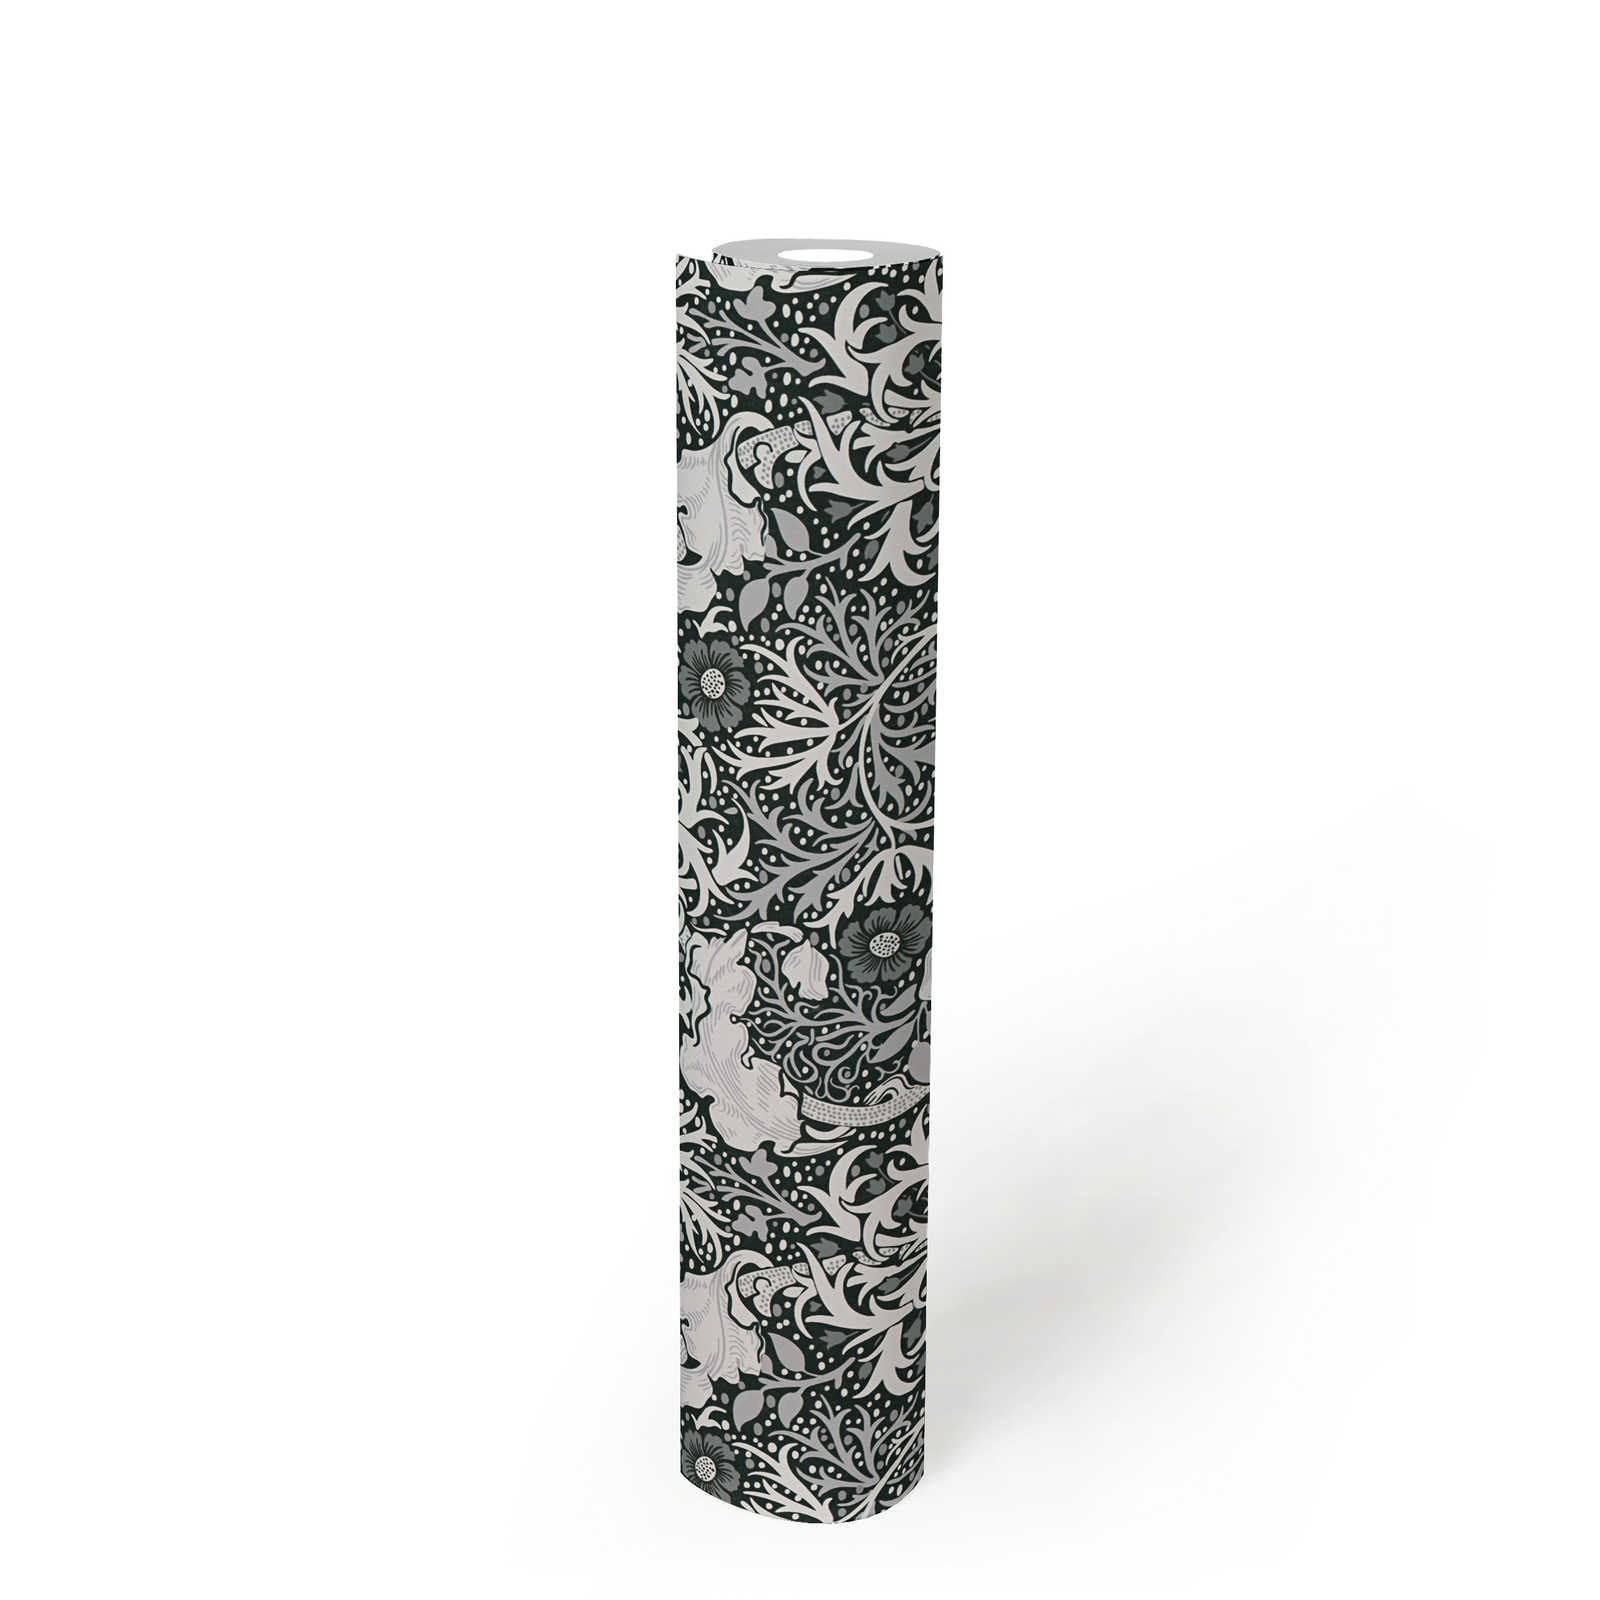             Vliestapete mit floralem Muster Ranken und Blumen – Weiß, Schwarz, Grau
        